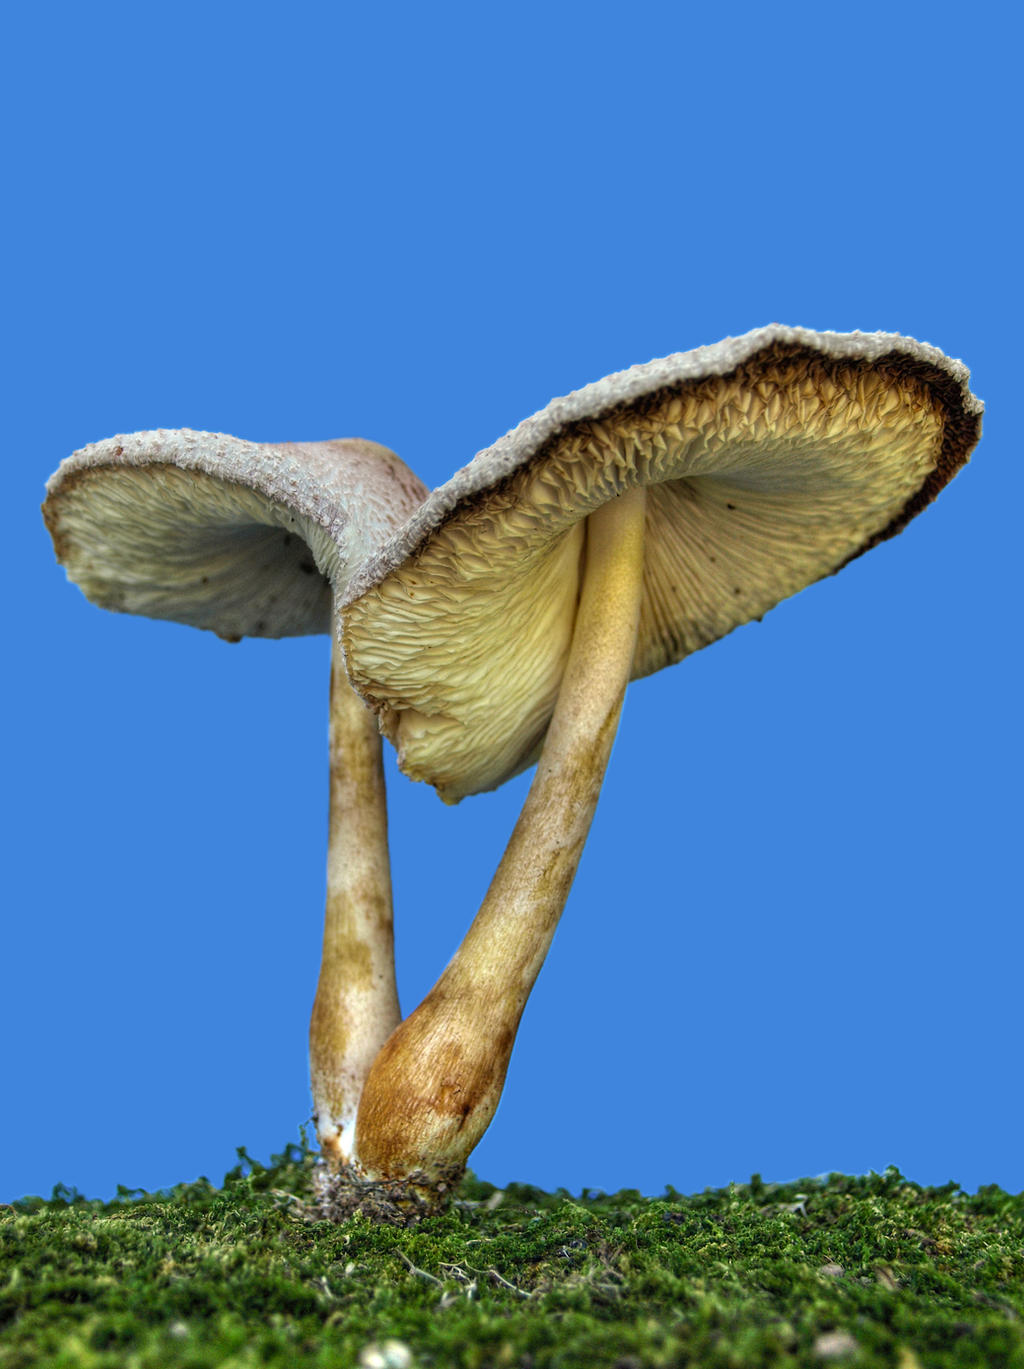 More Mushrooms 4